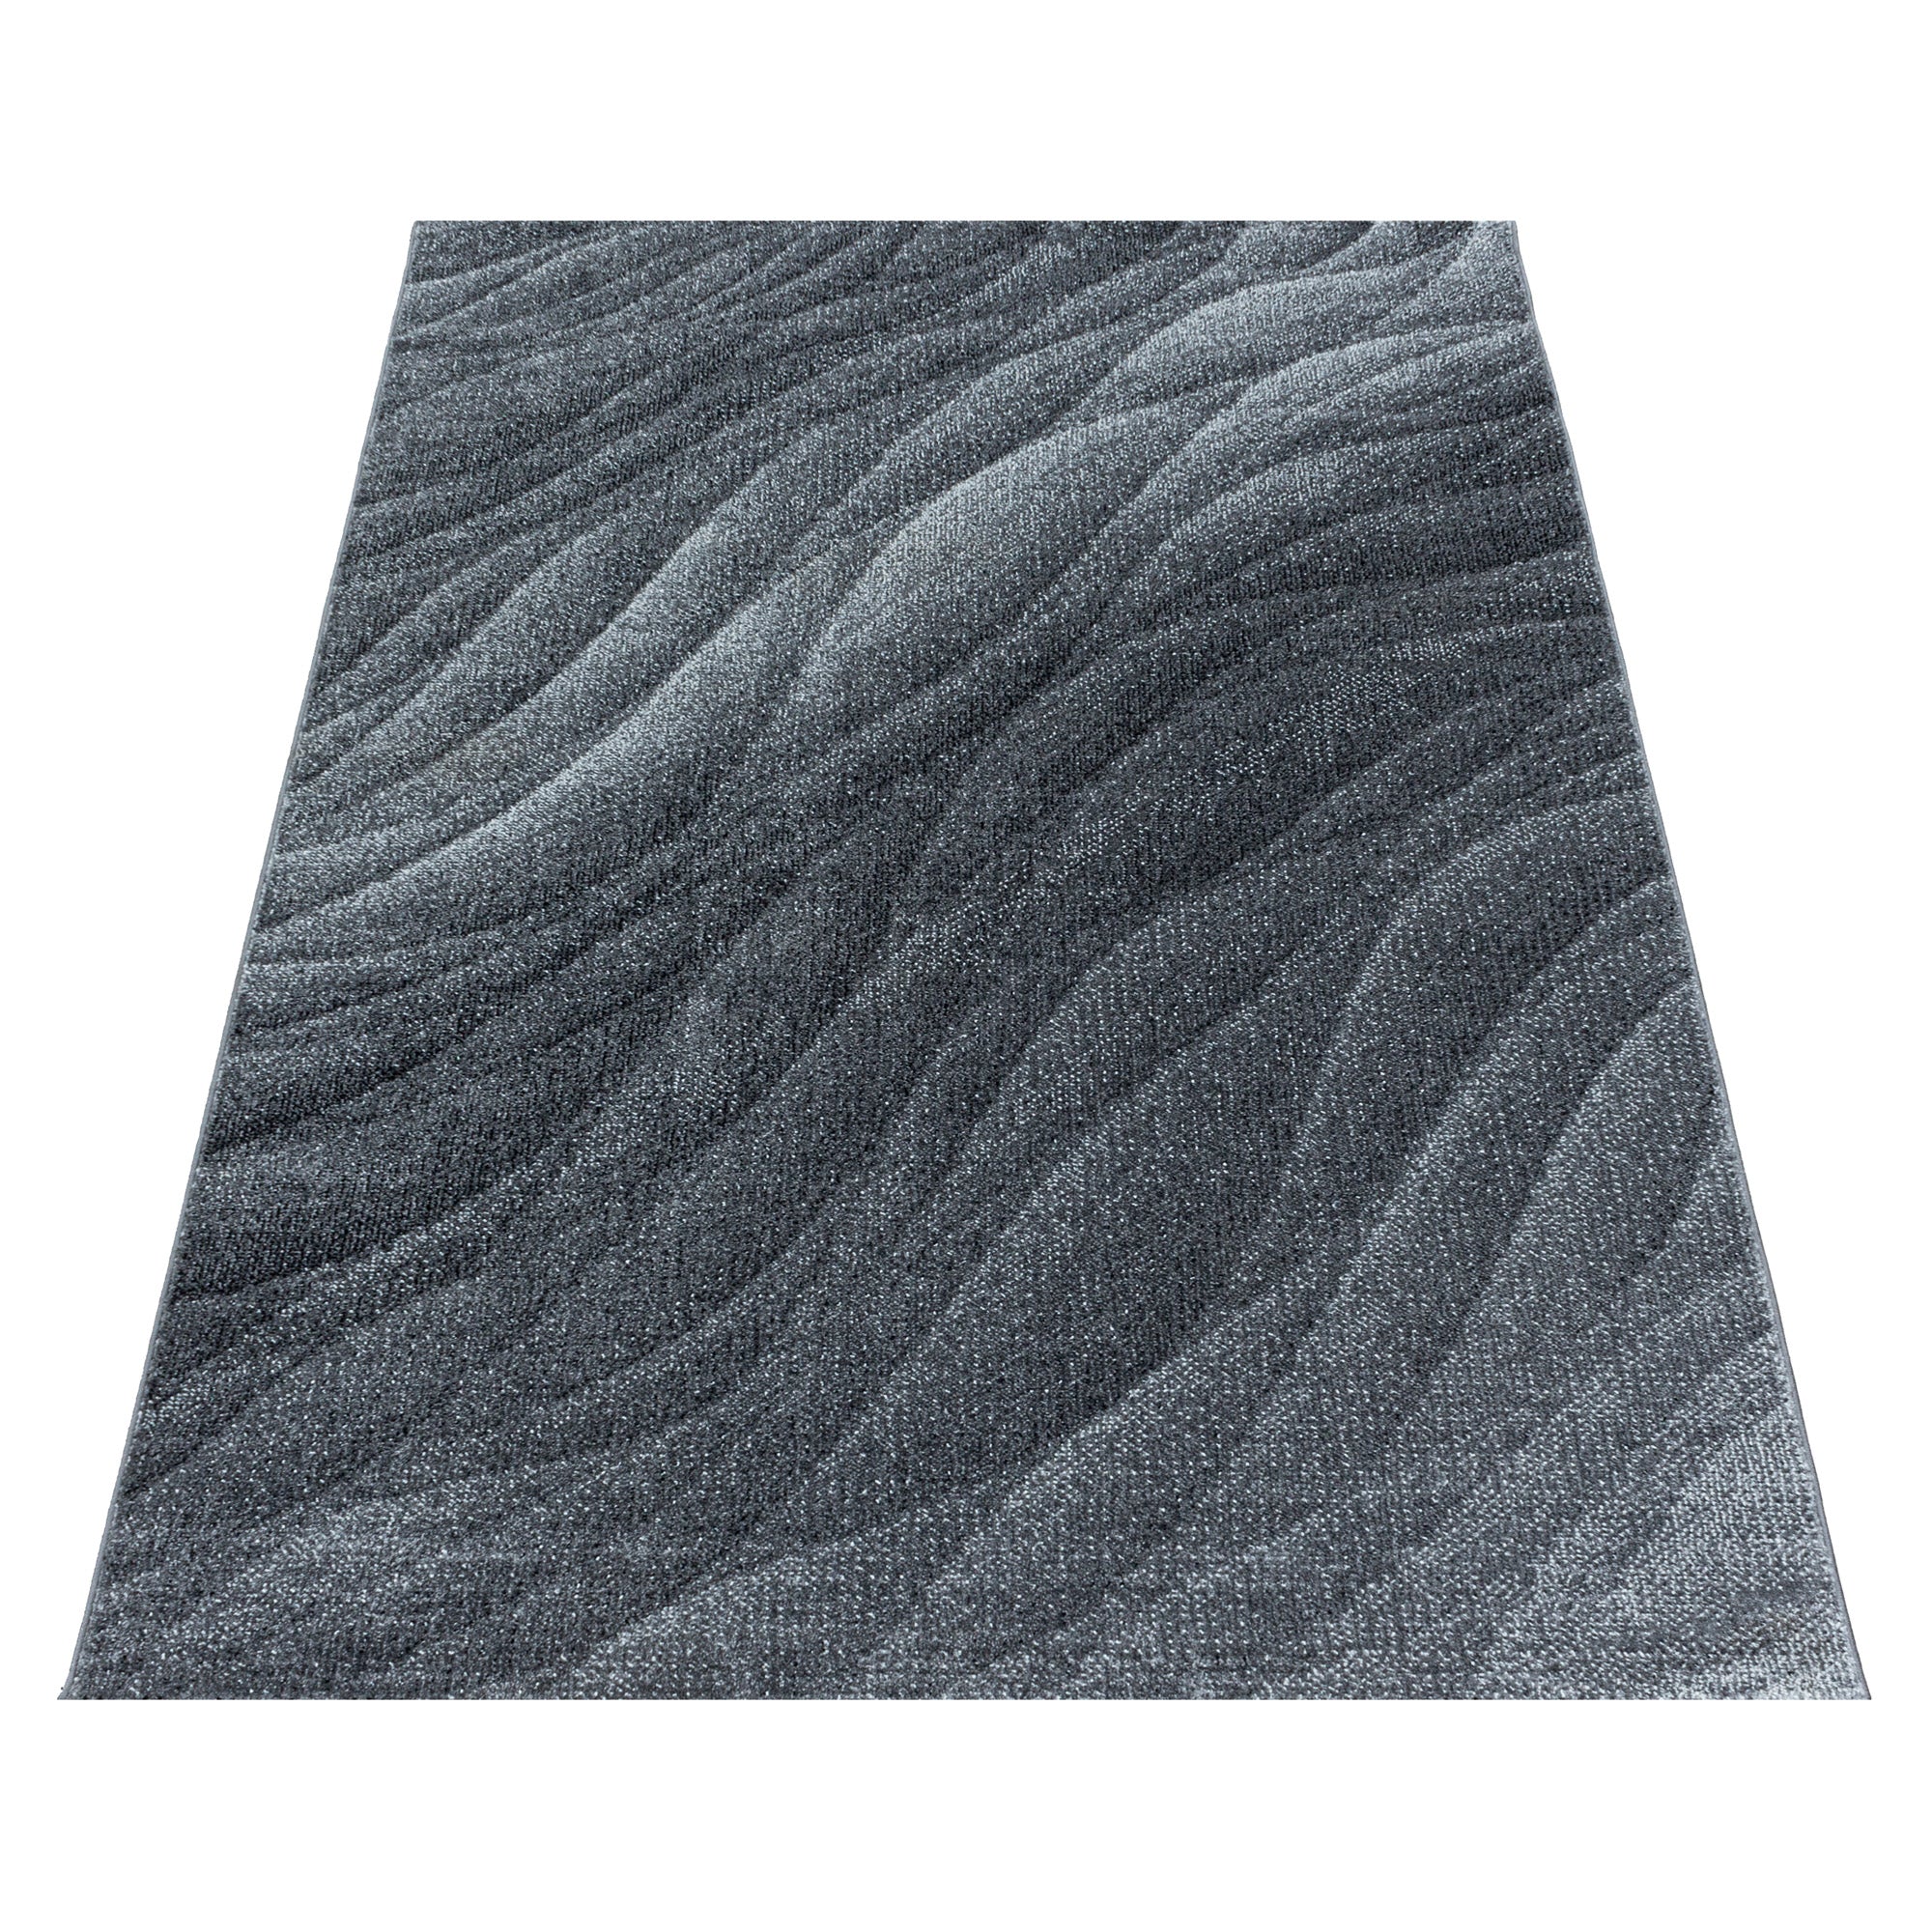 Kurzflor Teppich Grau Muster Modern Design Wellen Linien Wohnteppich Weich